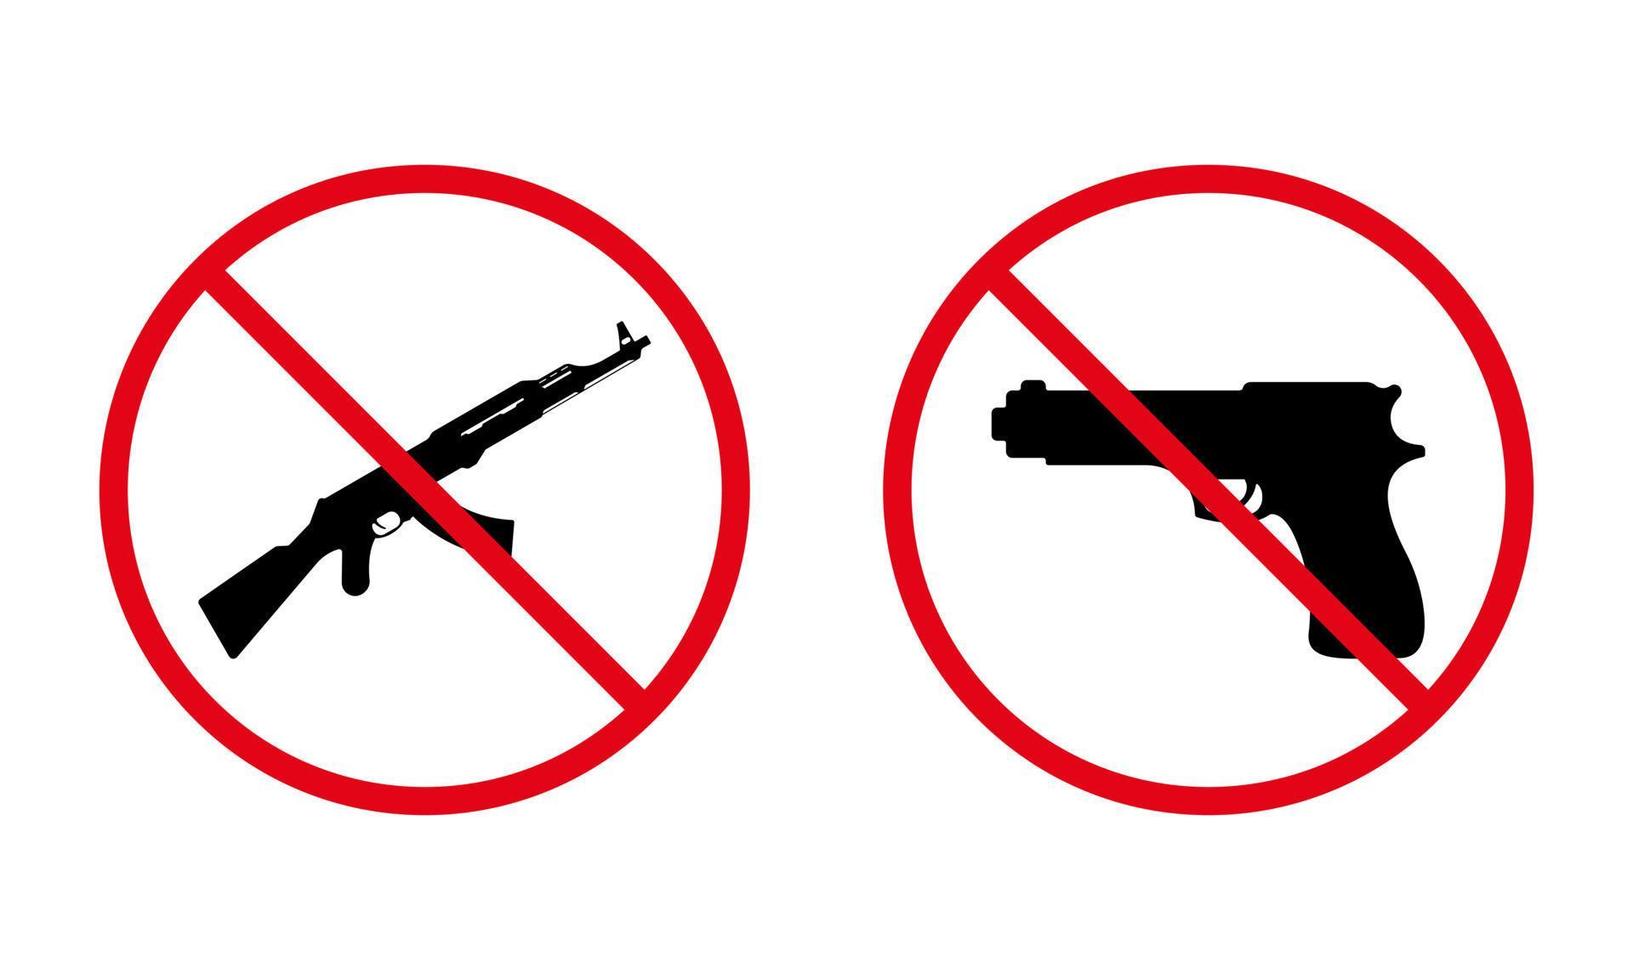 pistola a mano e ak 47 kalashnikov automatico fermano l'icona della silhouette nera. pistola militare, pittogramma vietato ak47. simbolo di divieto rosso dell'arma dell'esercito. pericolo arma vietata. illustrazione vettoriale isolata.